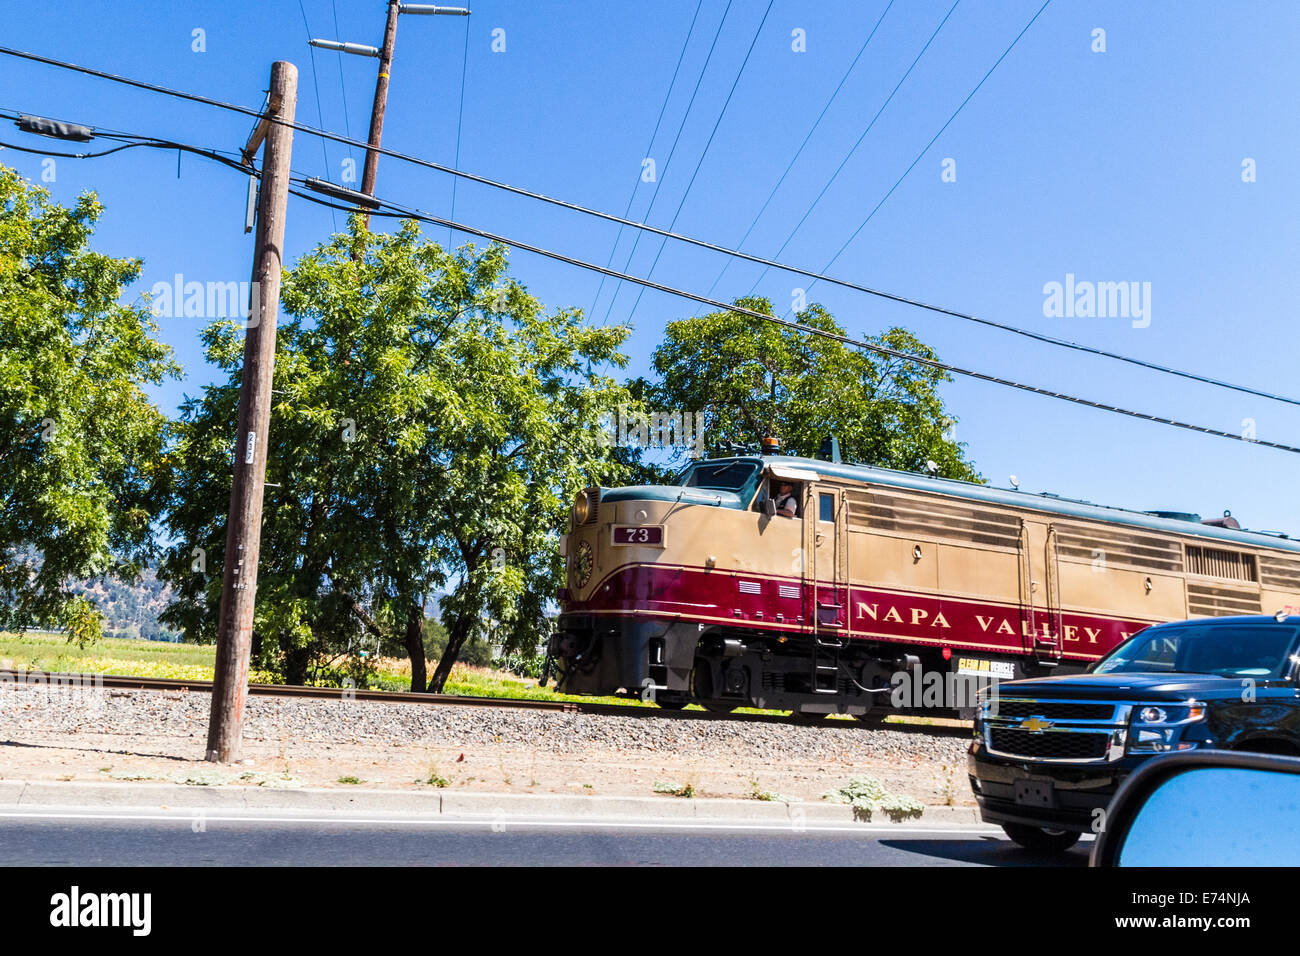 Le Napa Valley Wine Train près de Yountville Californie Banque D'Images